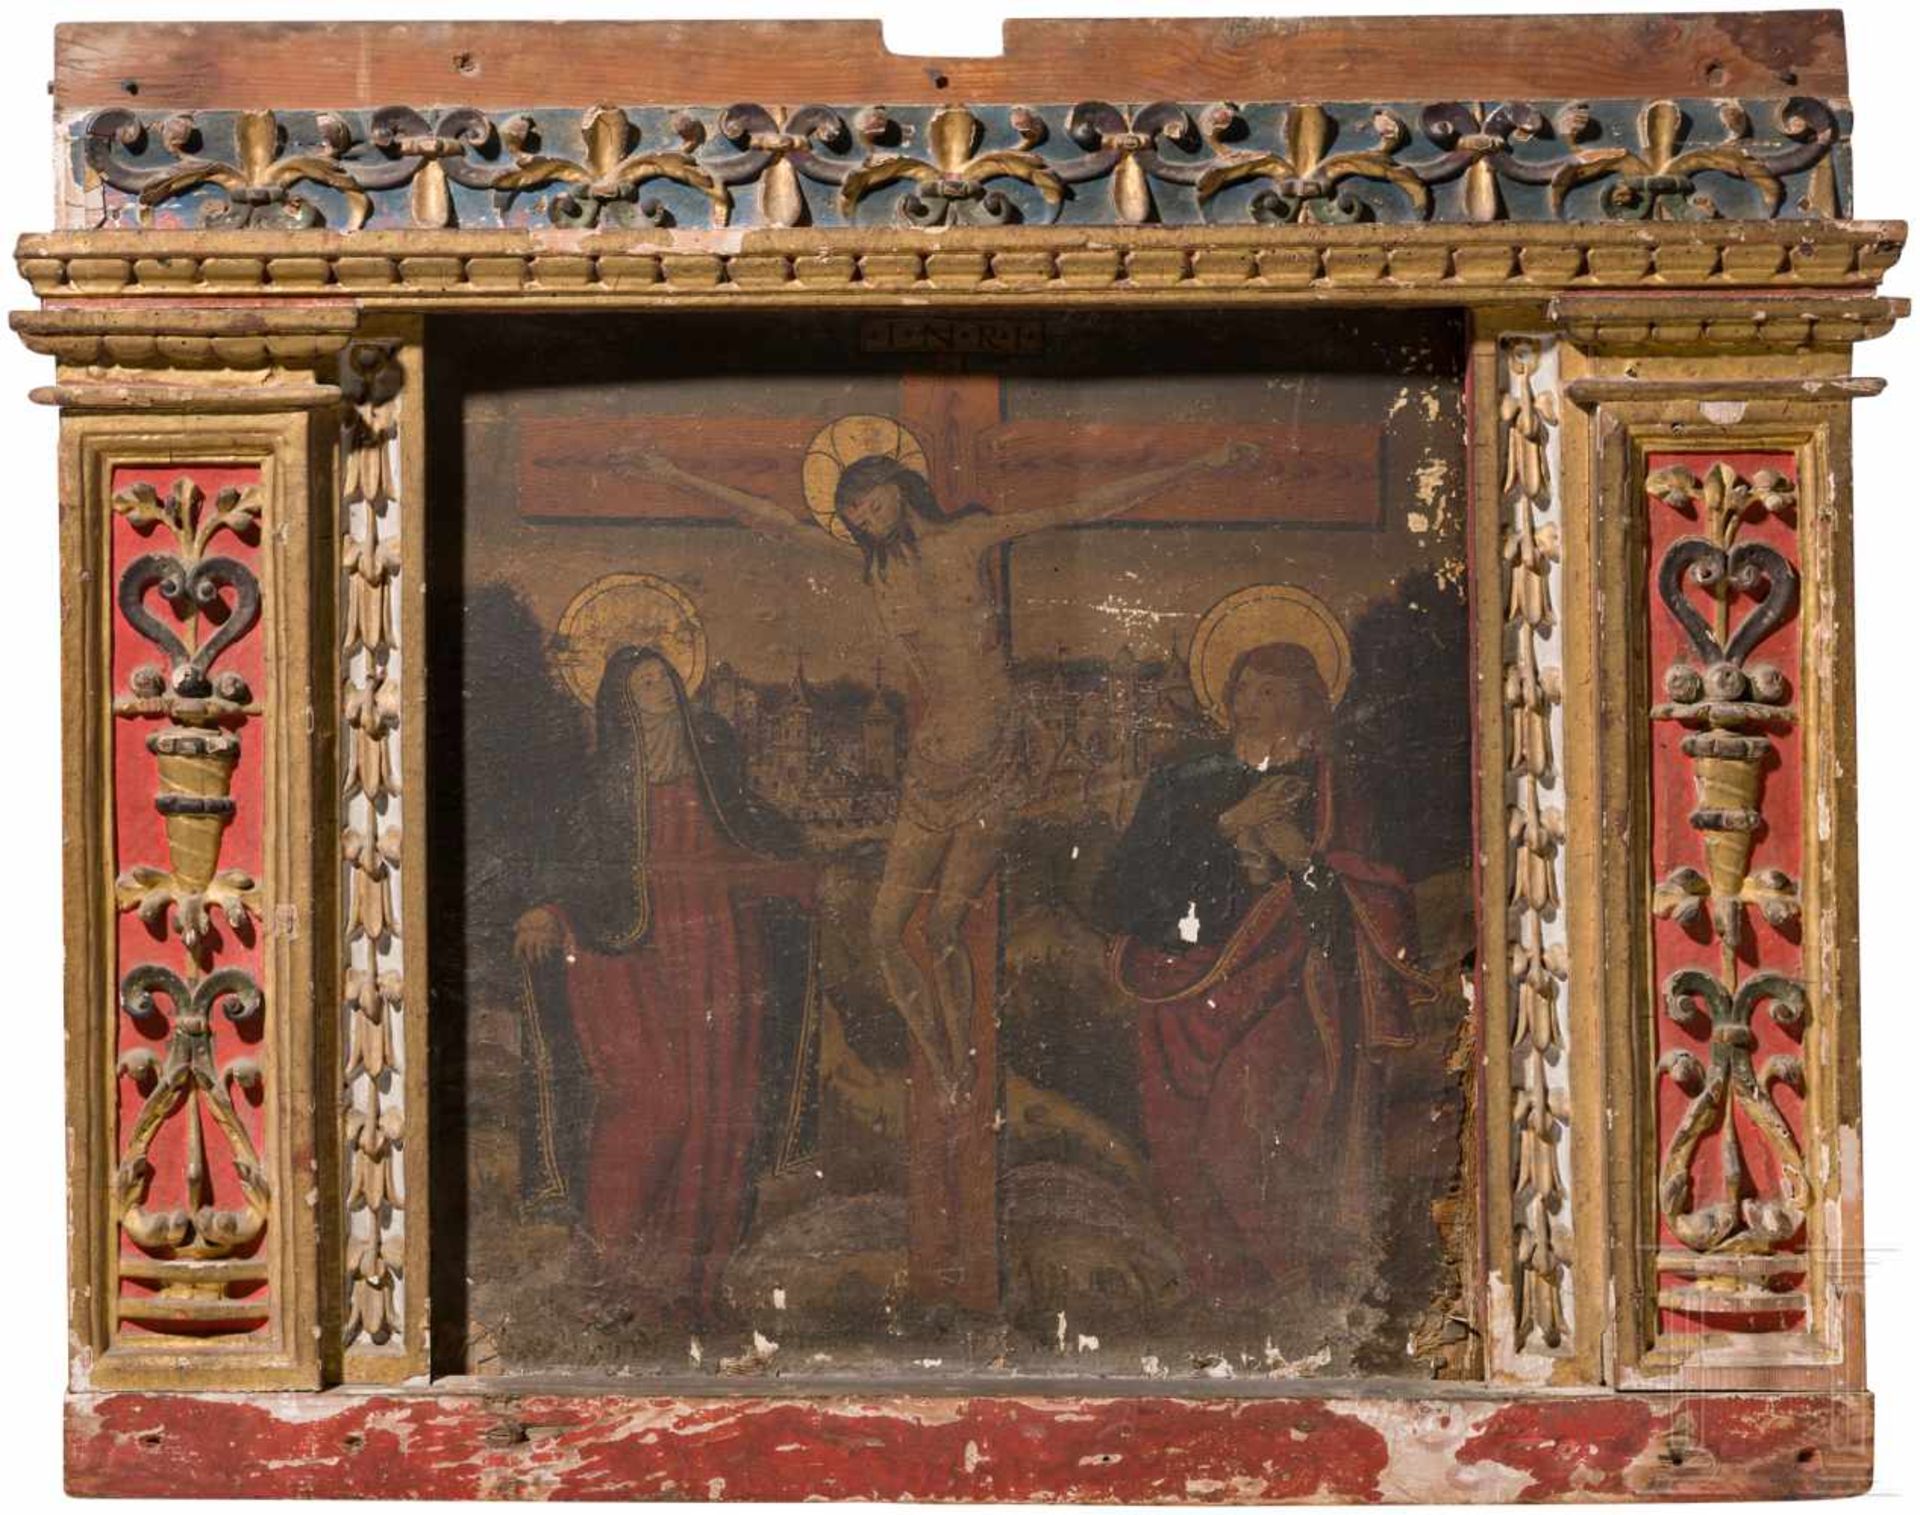 Tafelbild, Kreuzigung Christi, flämisch, 2. Hälfte 15. Jhdt.Tempera auf Kreidegrund, auf